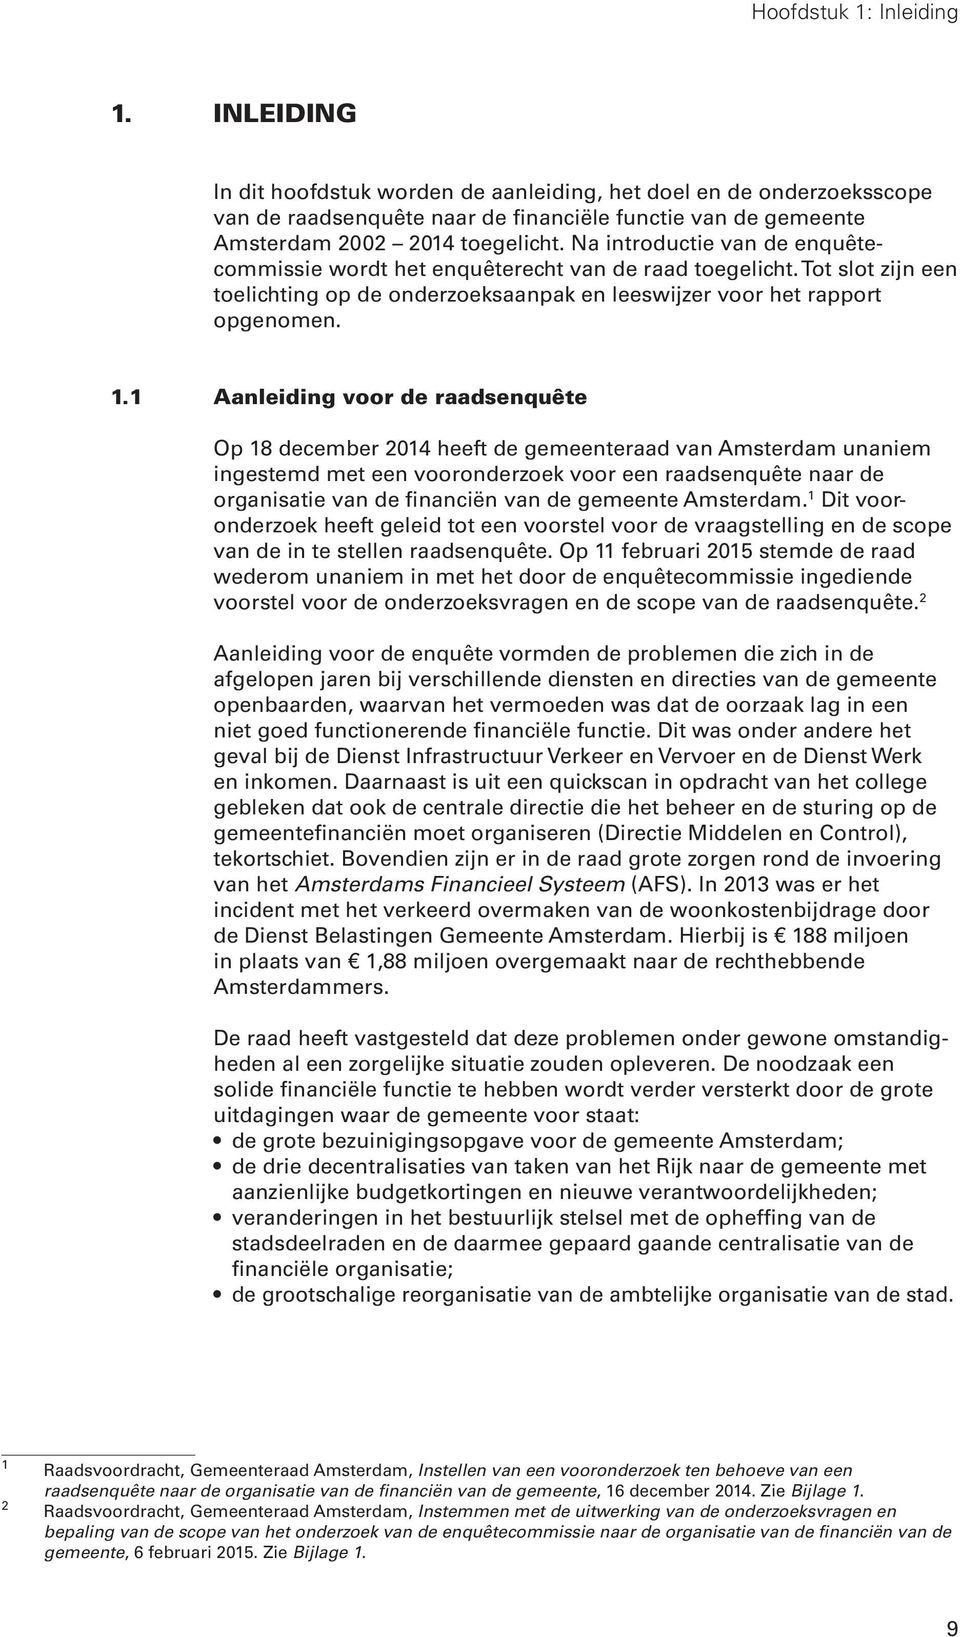 1 Aanleiding voor de raadsenquête Op 18 december 2014 heeft de gemeenteraad van Amsterdam unaniem ingestemd met een vooronderzoek voor een raadsenquête naar de organisatie van de financiën van de